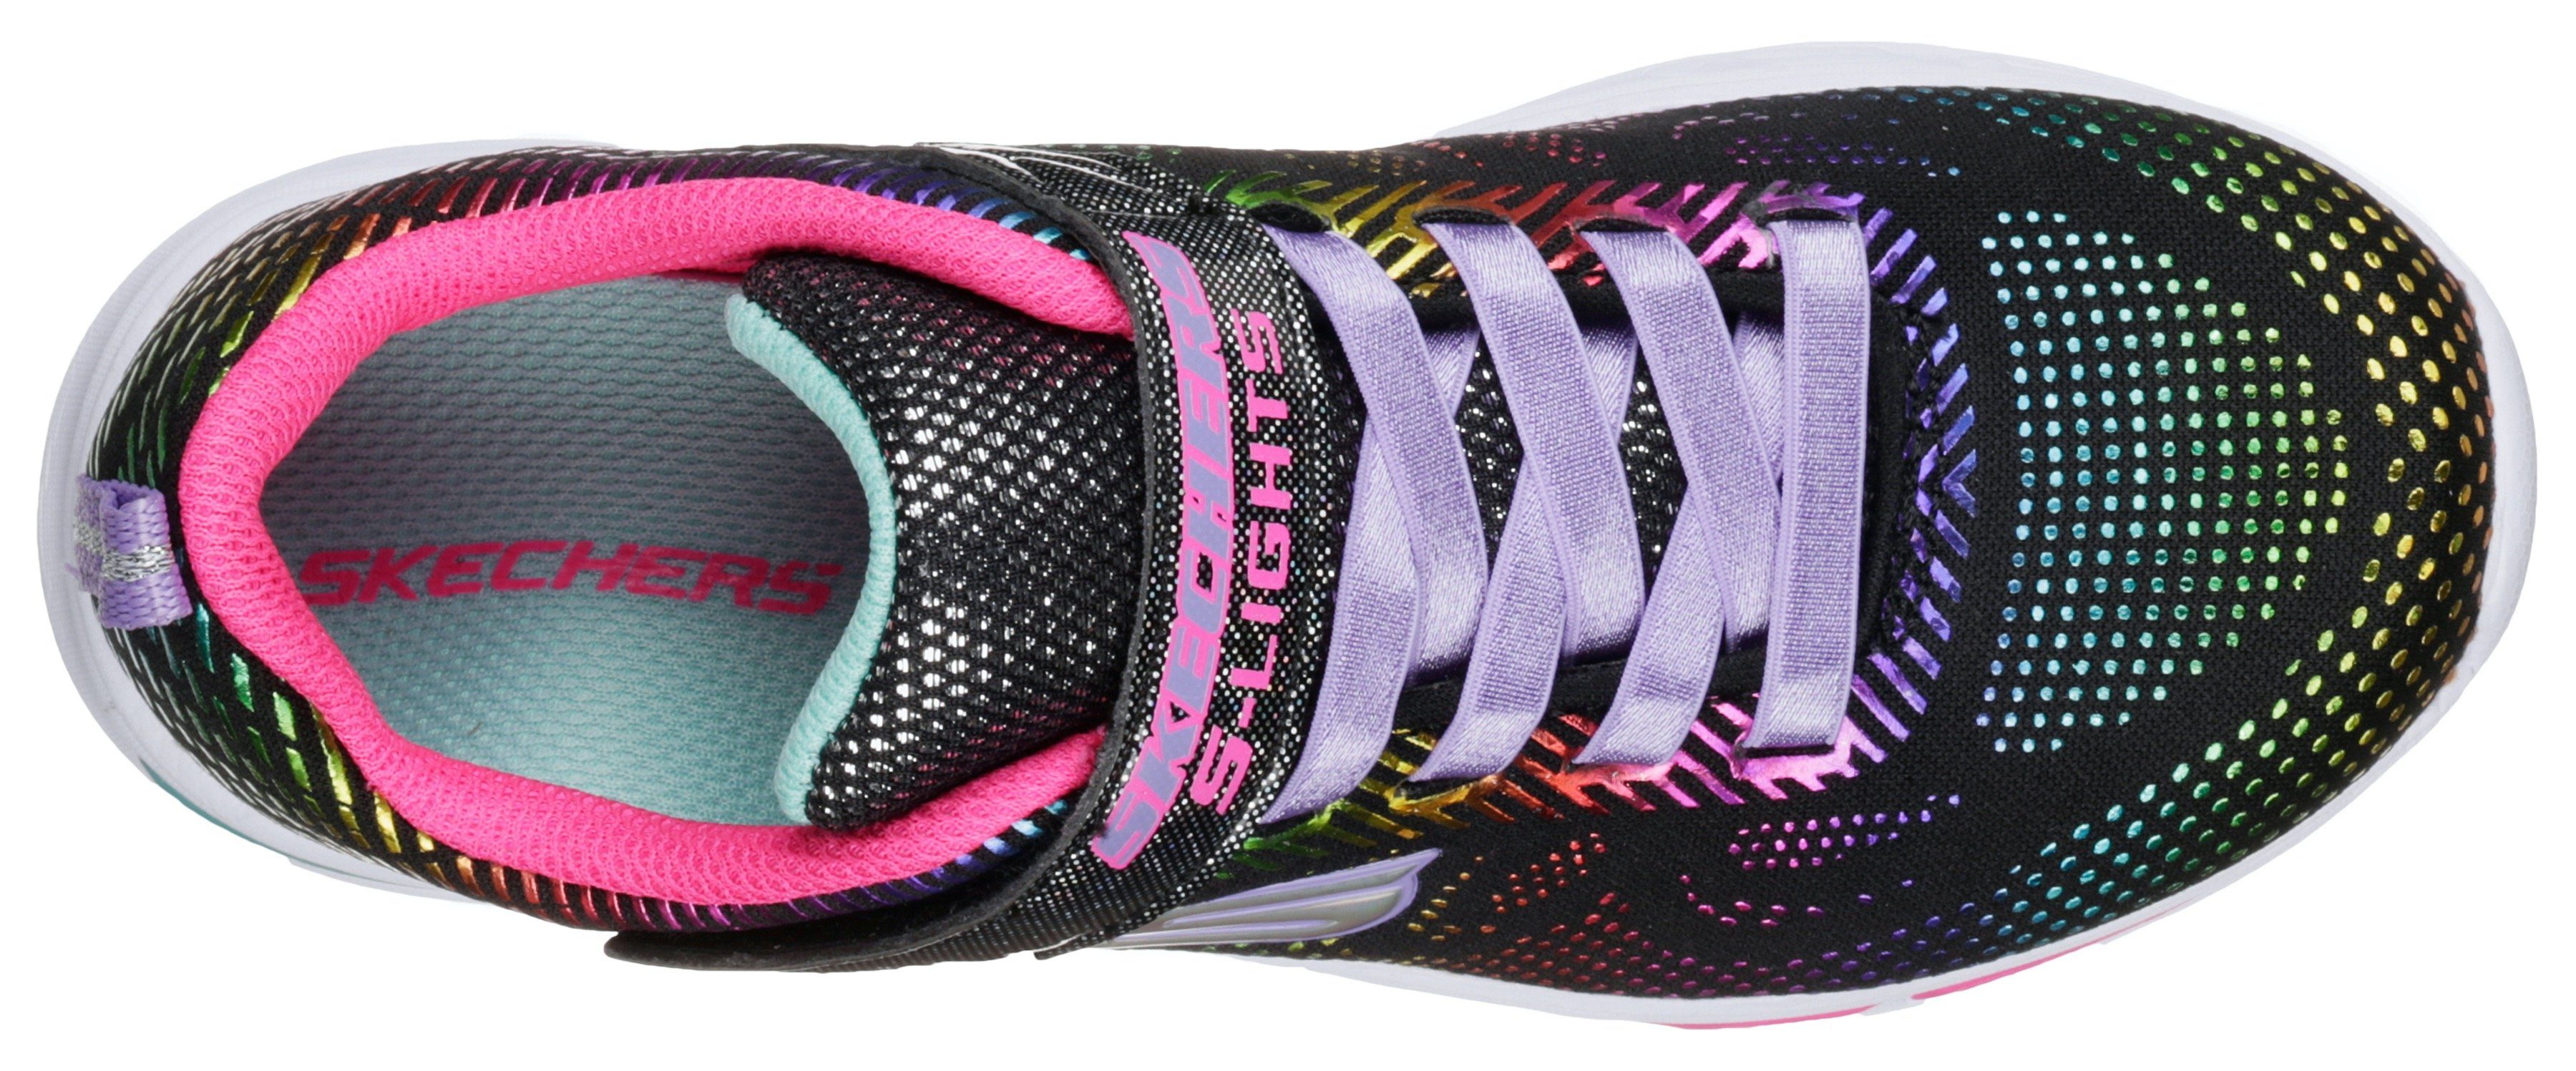 N`Dream blinkender Kids schwarz-regenbogenfarben-glitzer Sneaker LITEBEAMS-Gleam Skechers Laufsohle mit Blinkschuh